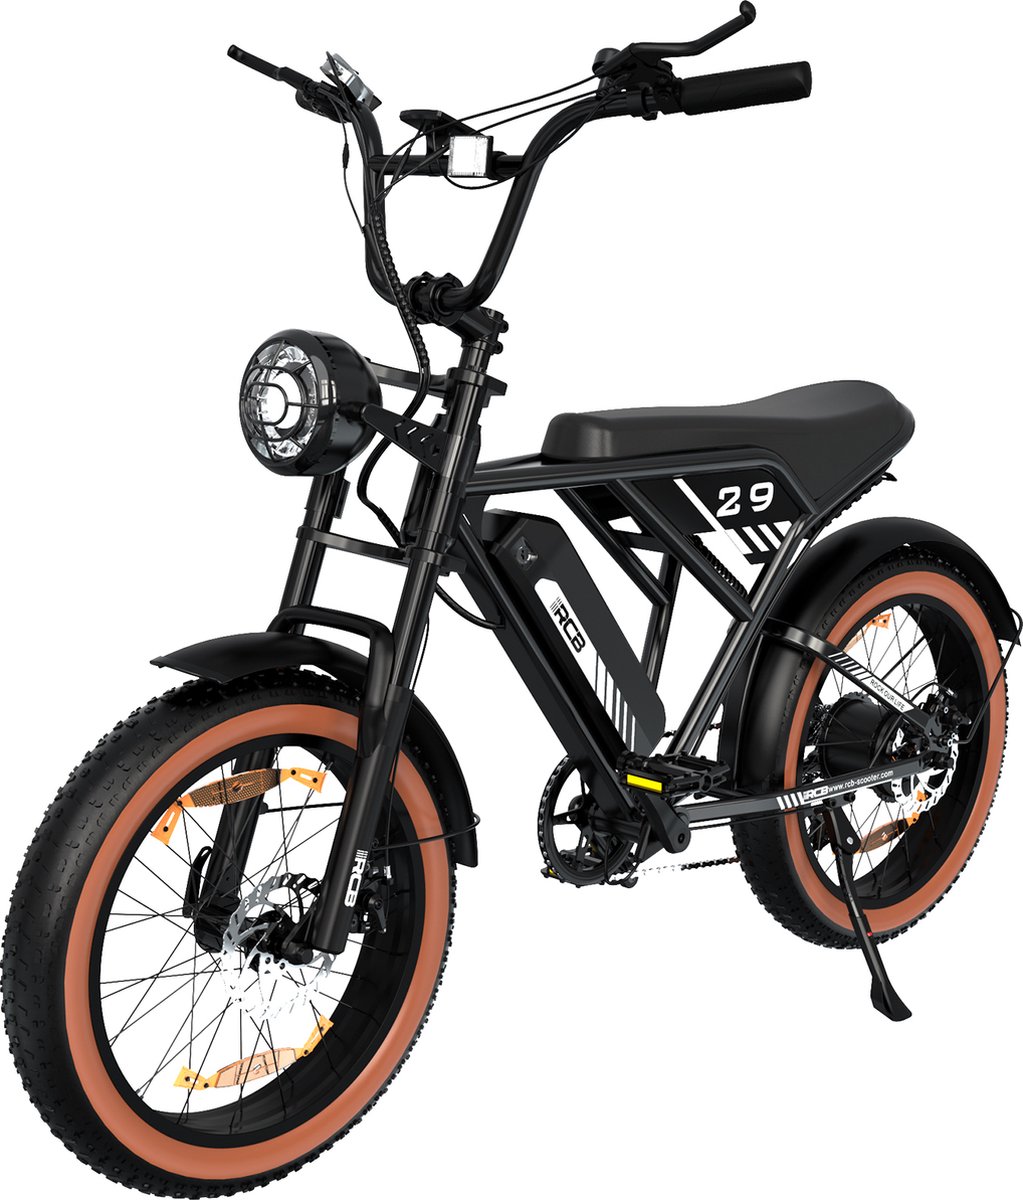 P4B - Fatbike - Elektrische Fatbike - Elektrische Fiets - Elektrische Mountainbike - E bike - Zwart - 1 jaar garantie - Legaal openbare weg